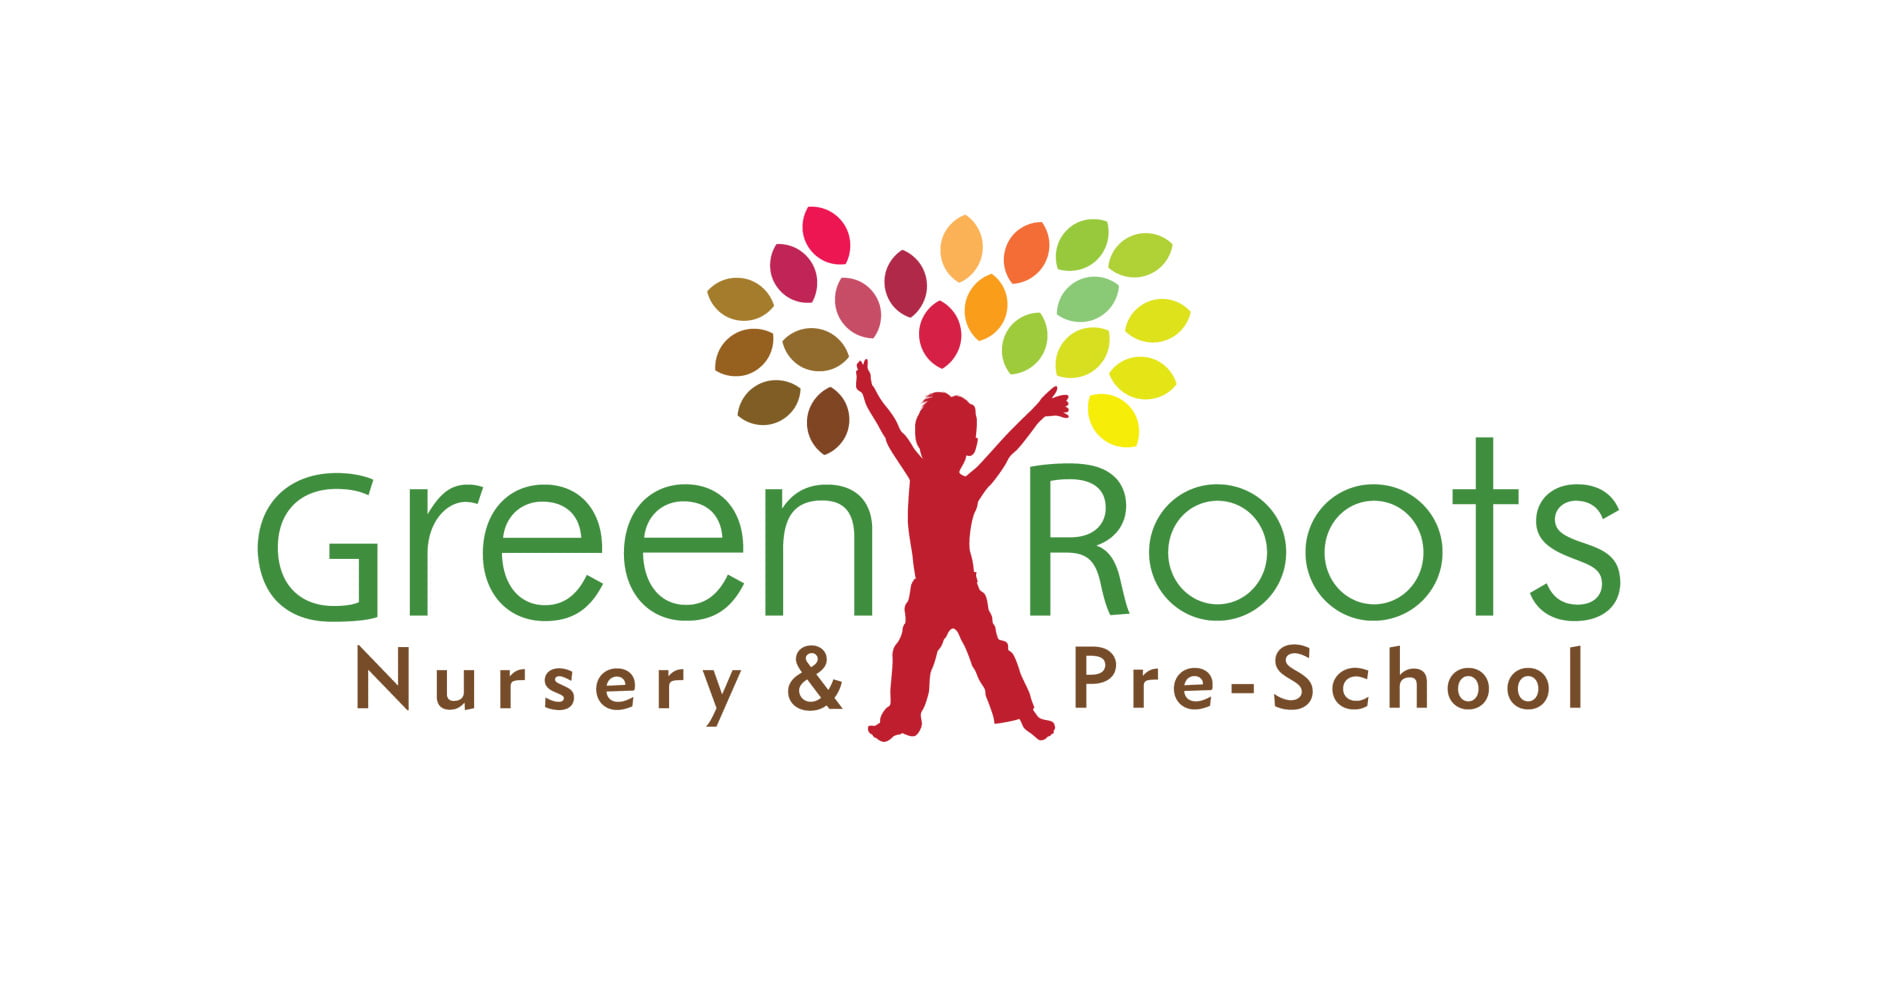 Green Roots Nursery & Pre-School refined logo